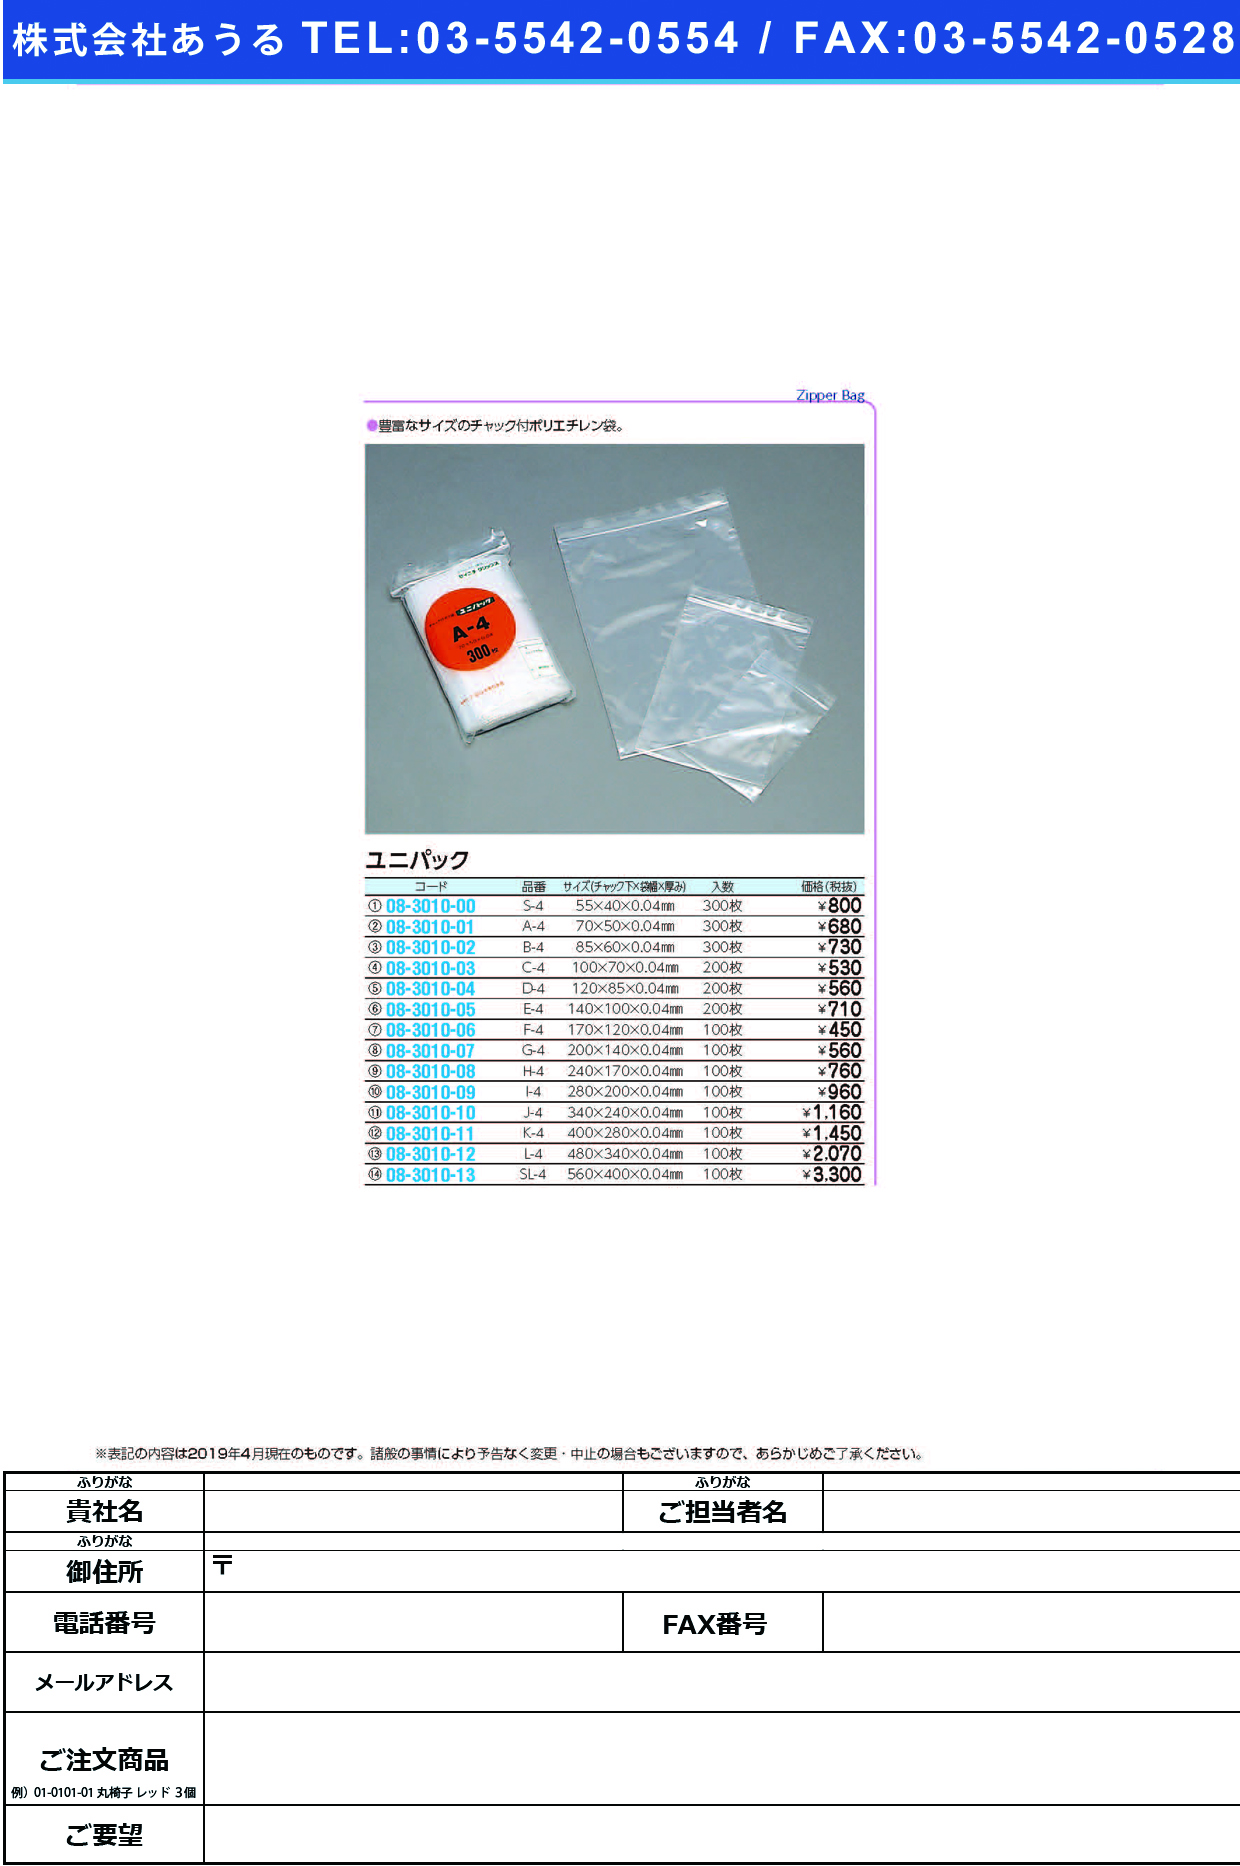 (08-3010-10)ユニパック J-4(340X240MM)100ﾏｲ ﾕﾆﾊﾟｯｸ【1袋単位】【2019年カタログ商品】